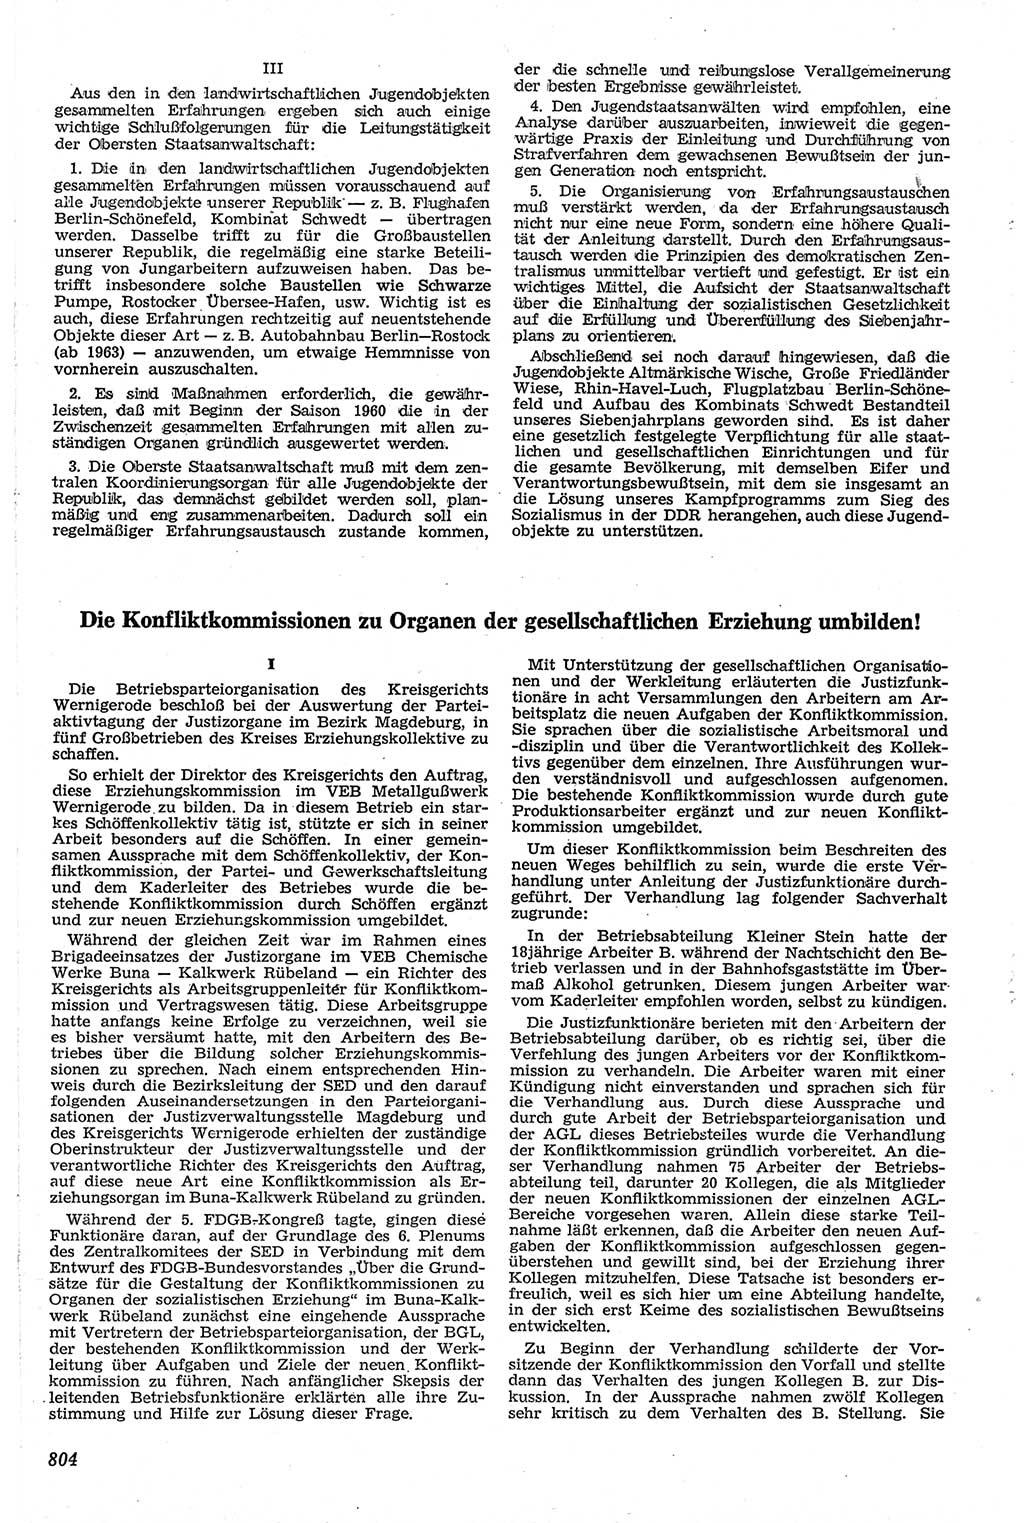 Neue Justiz (NJ), Zeitschrift für Recht und Rechtswissenschaft [Deutsche Demokratische Republik (DDR)], 13. Jahrgang 1959, Seite 804 (NJ DDR 1959, S. 804)